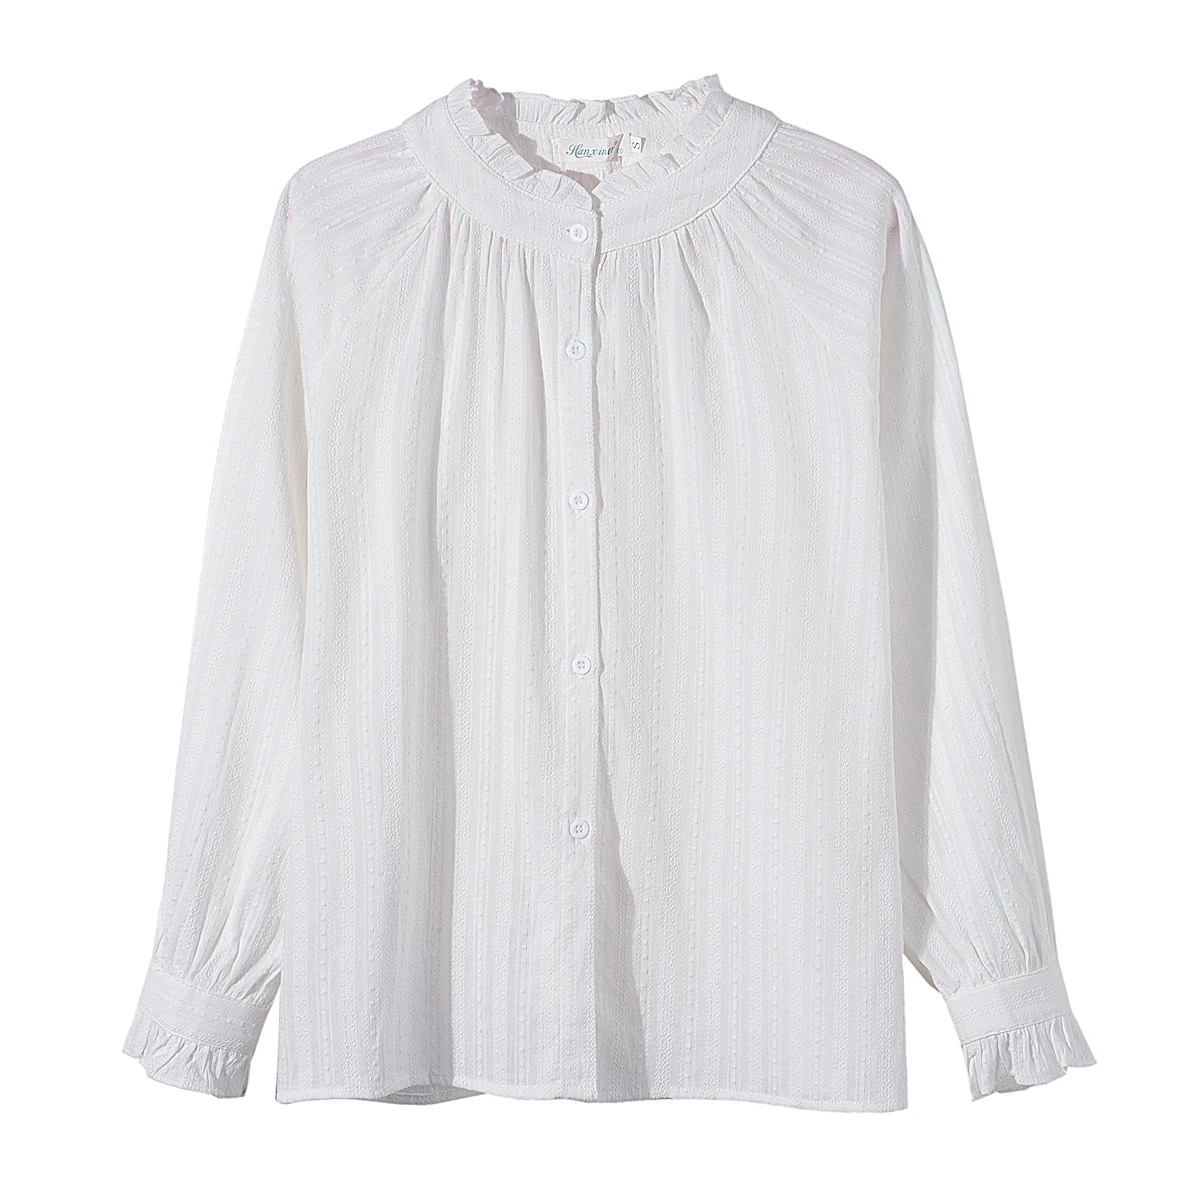 Женская шифоновая блузка с длинными рукавами-фонариками, белая блузка в офисном стиле с оборками, весна 2023